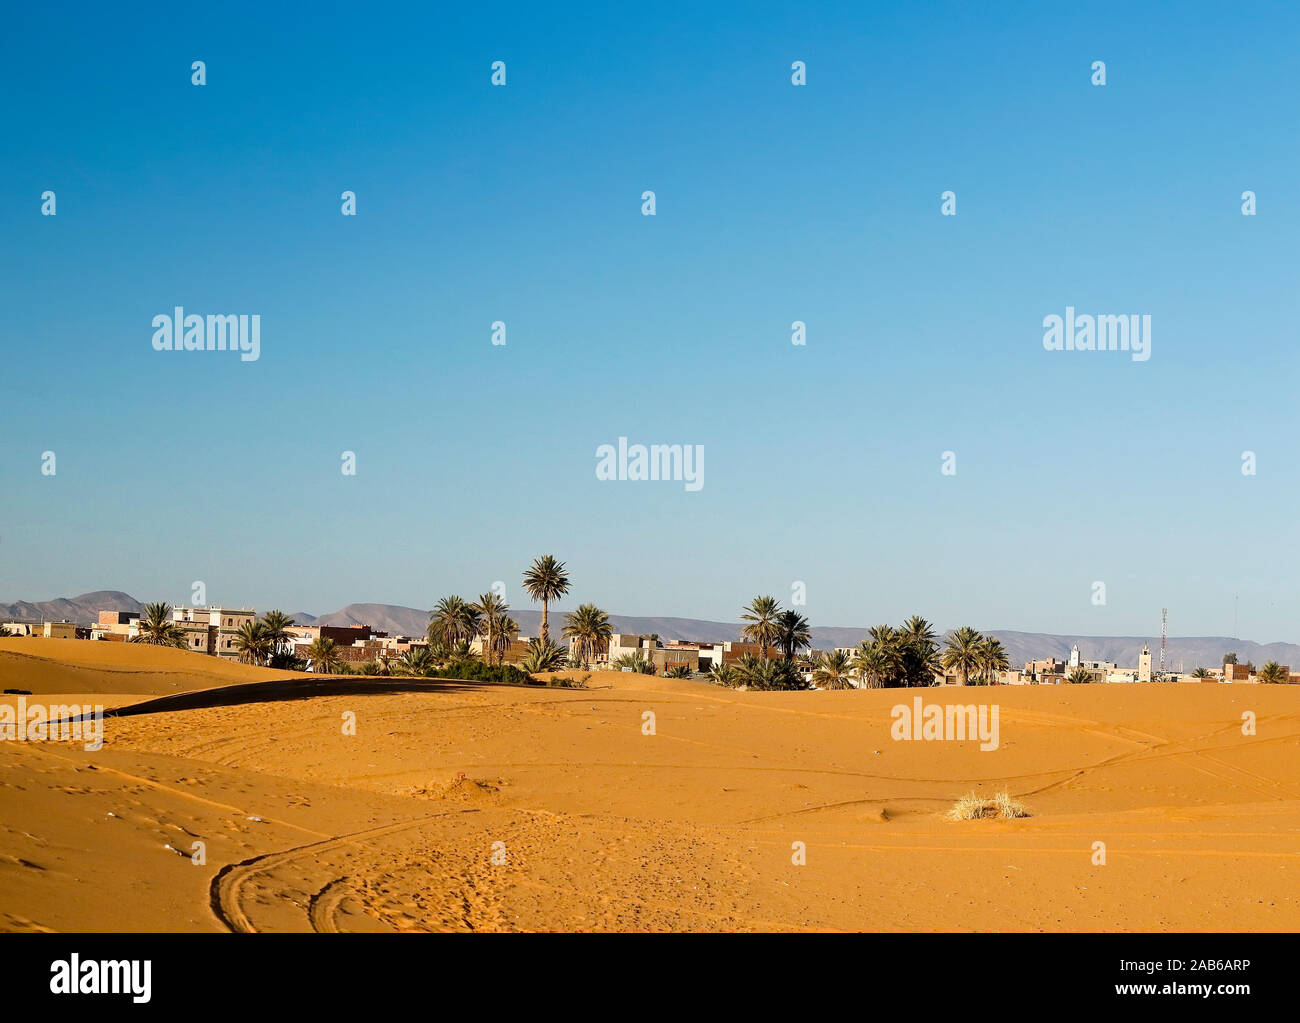 Merzouga village at Sahara Desert, Morocco Stock Photo